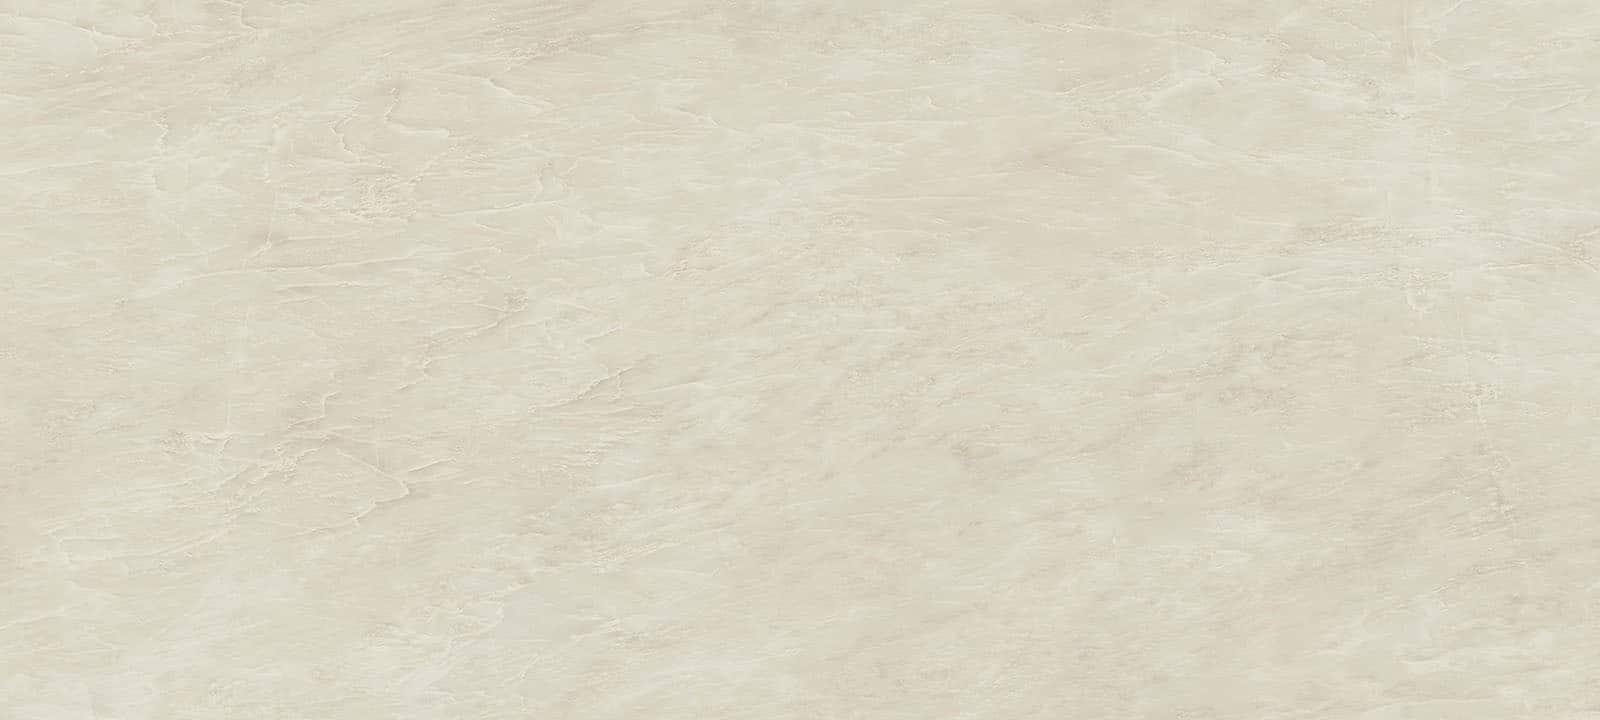 Minoli Wall &amp; Floor Tiles Marvel Imperial White